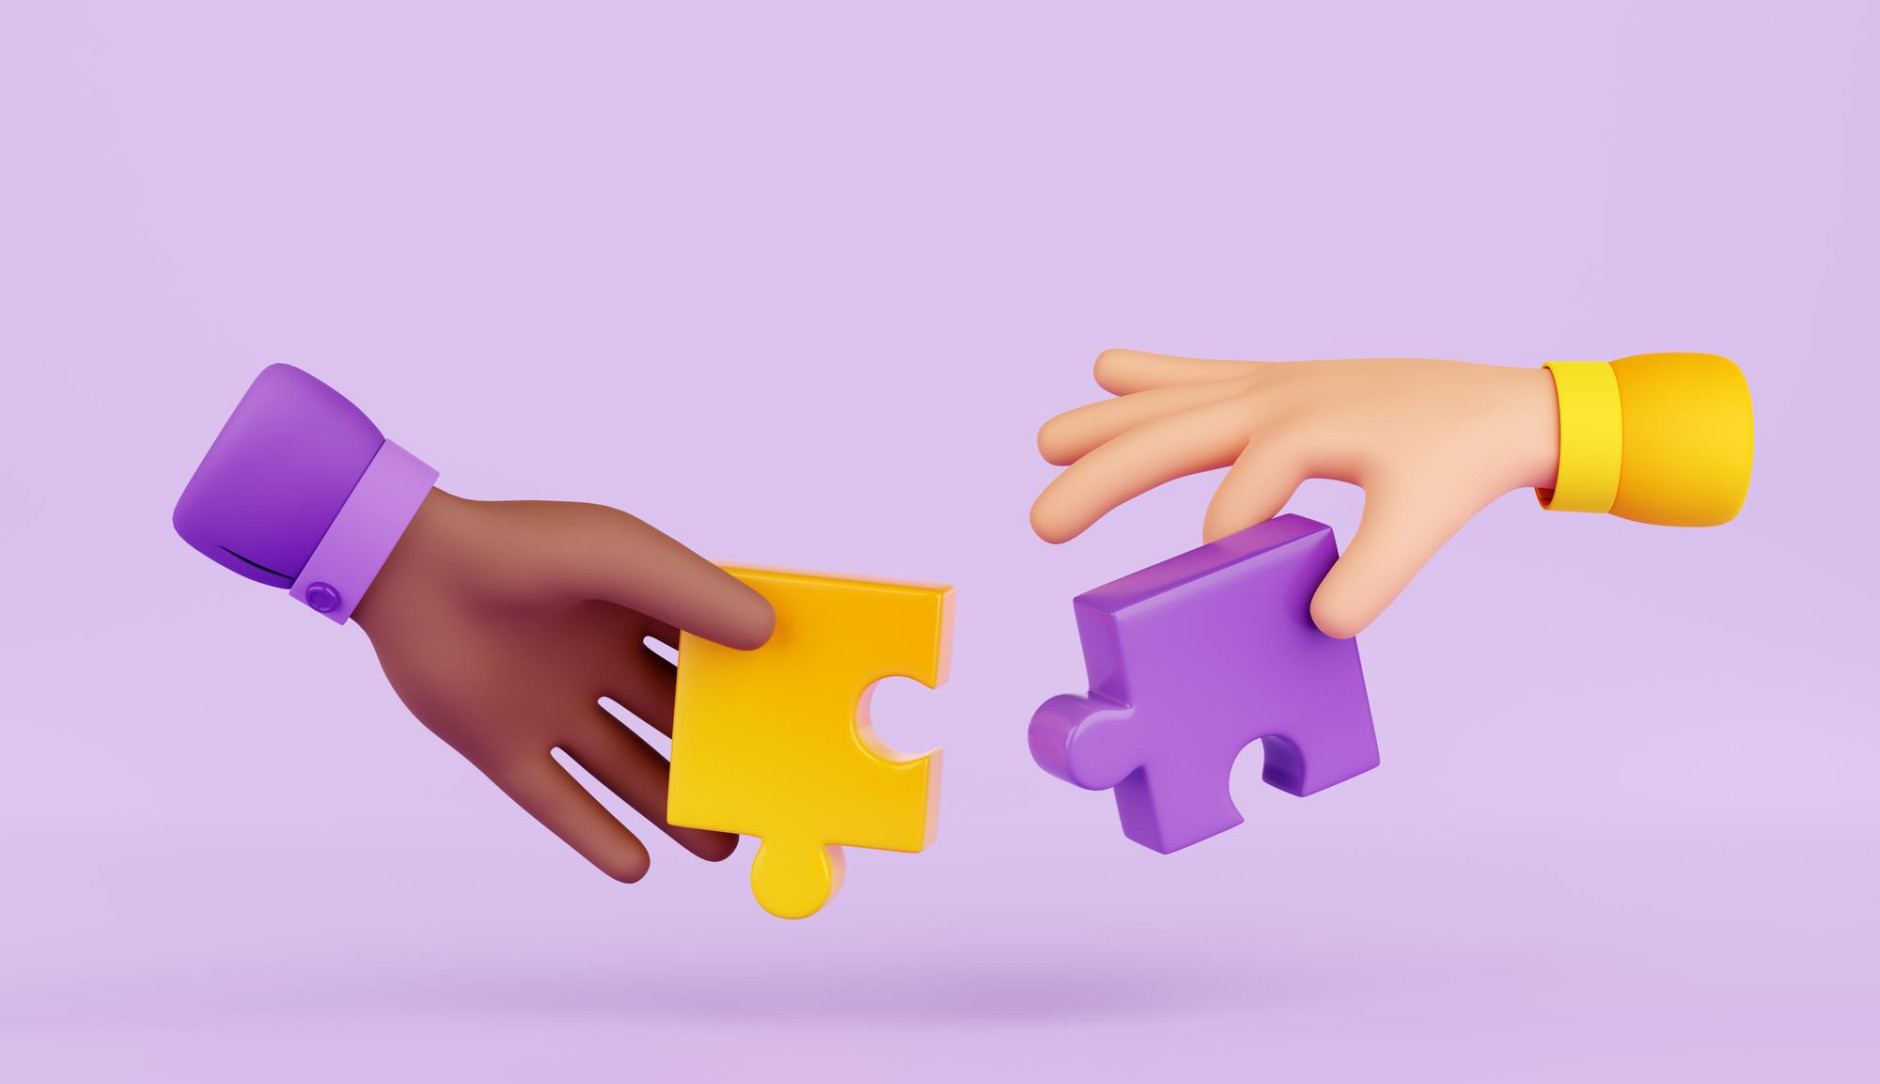 3D animatie van 2 handen die puzzel stukjes vasthouden. De mouwen en puzzelstukjes zijn paars en geel.